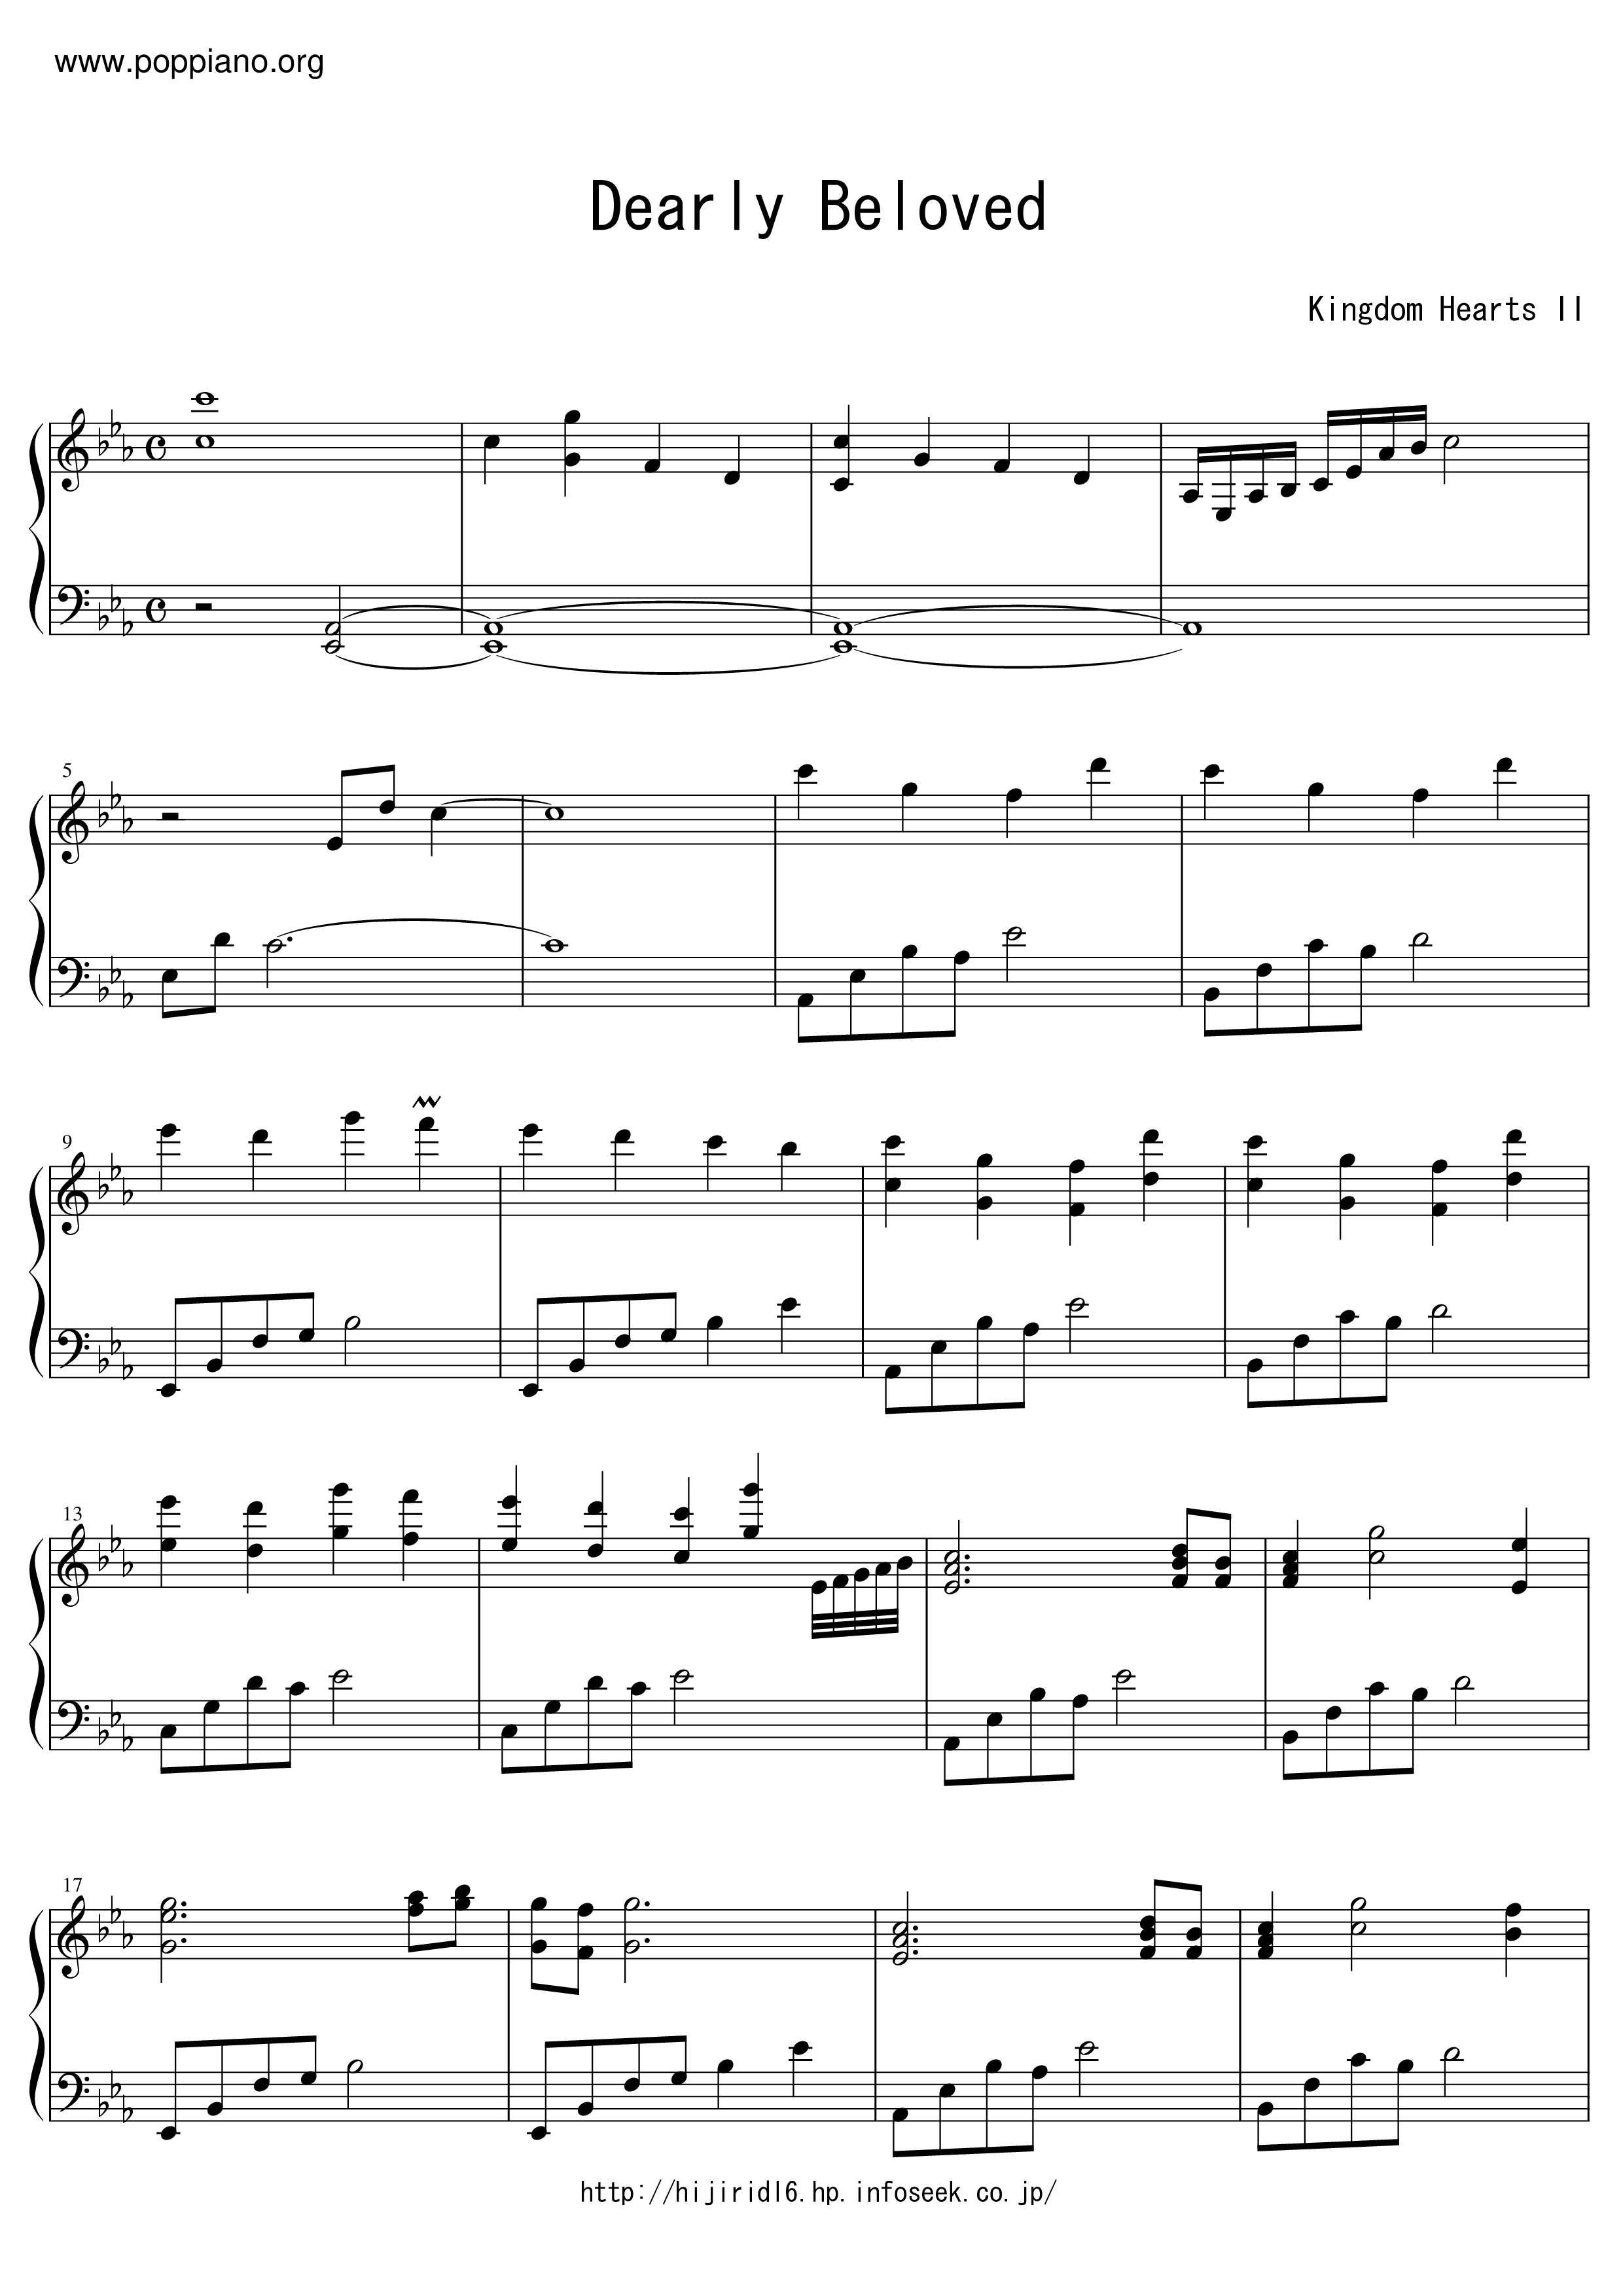 Kingdom Hearts II-Dearly Beloved Sheet Music pdf, - Free Score Download ★